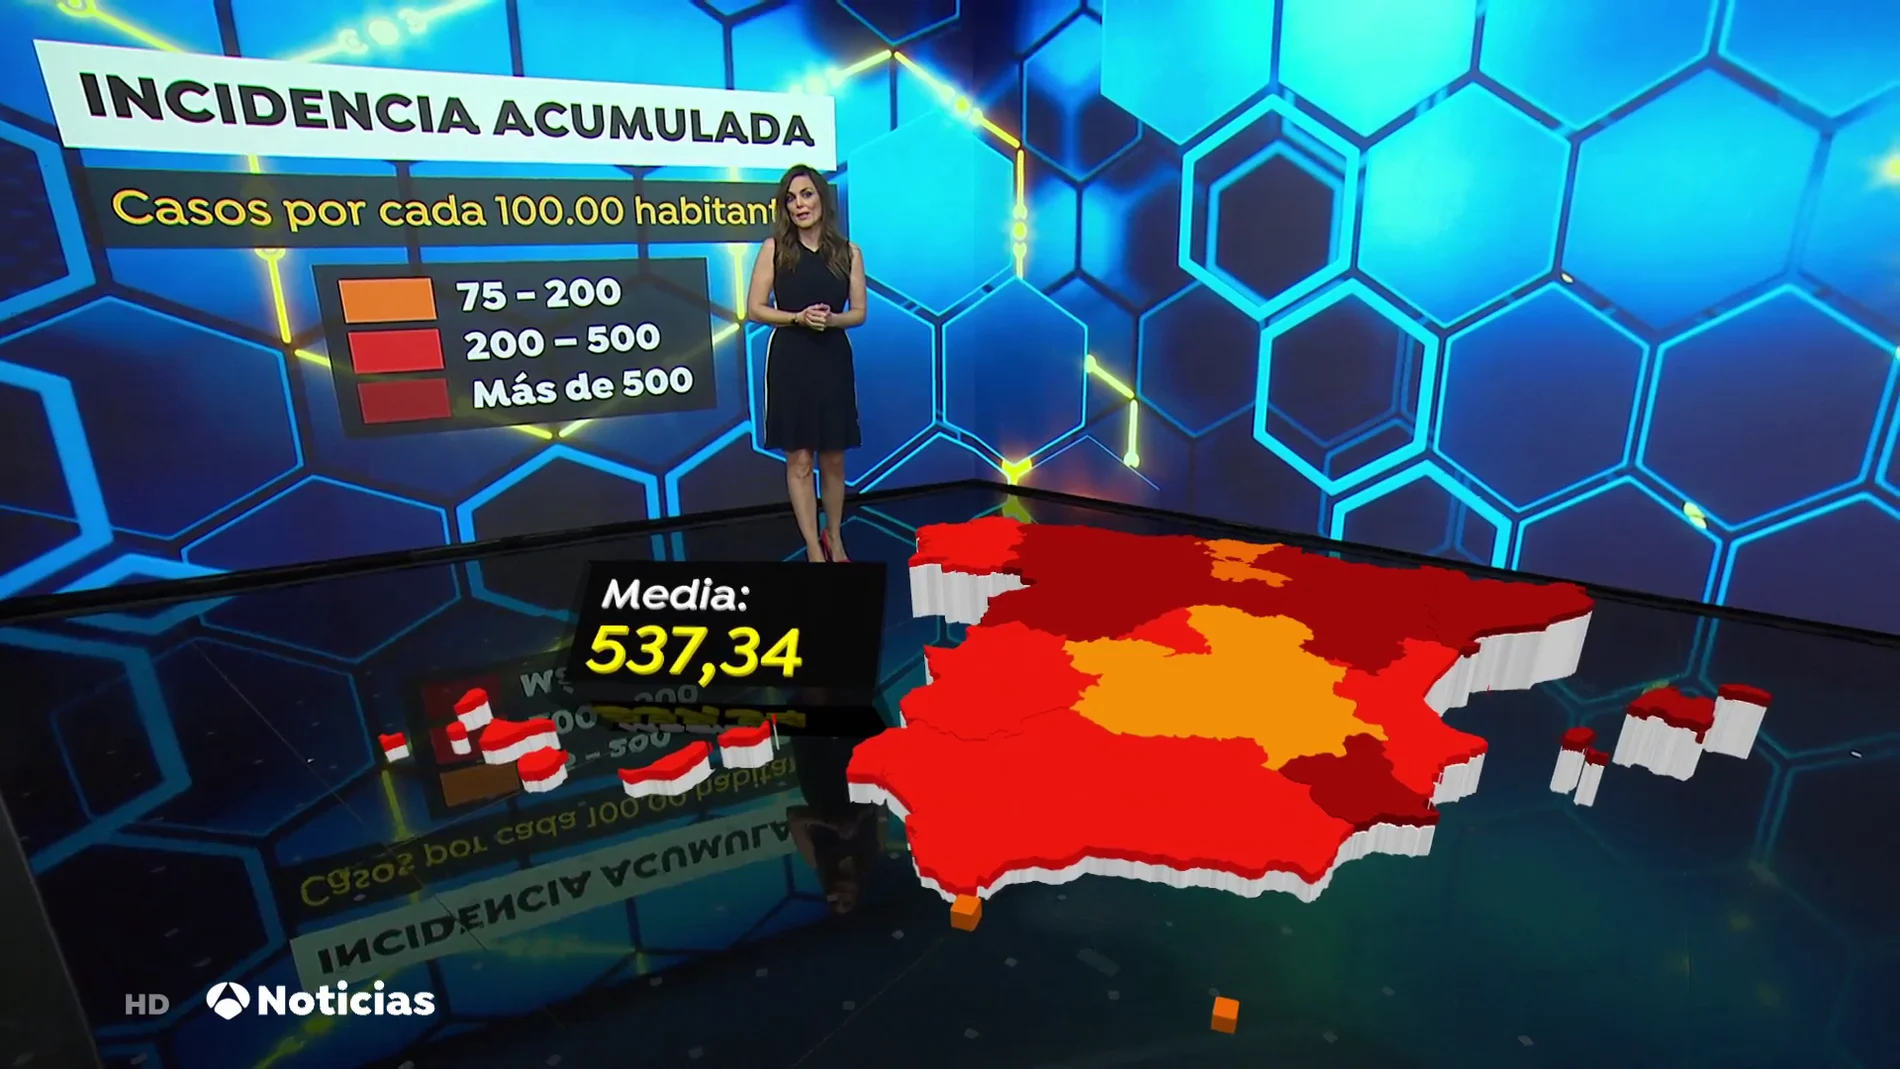 La incidencia acumulada continúa subiendo en España: 537 casos por cada 100.000 habitantes